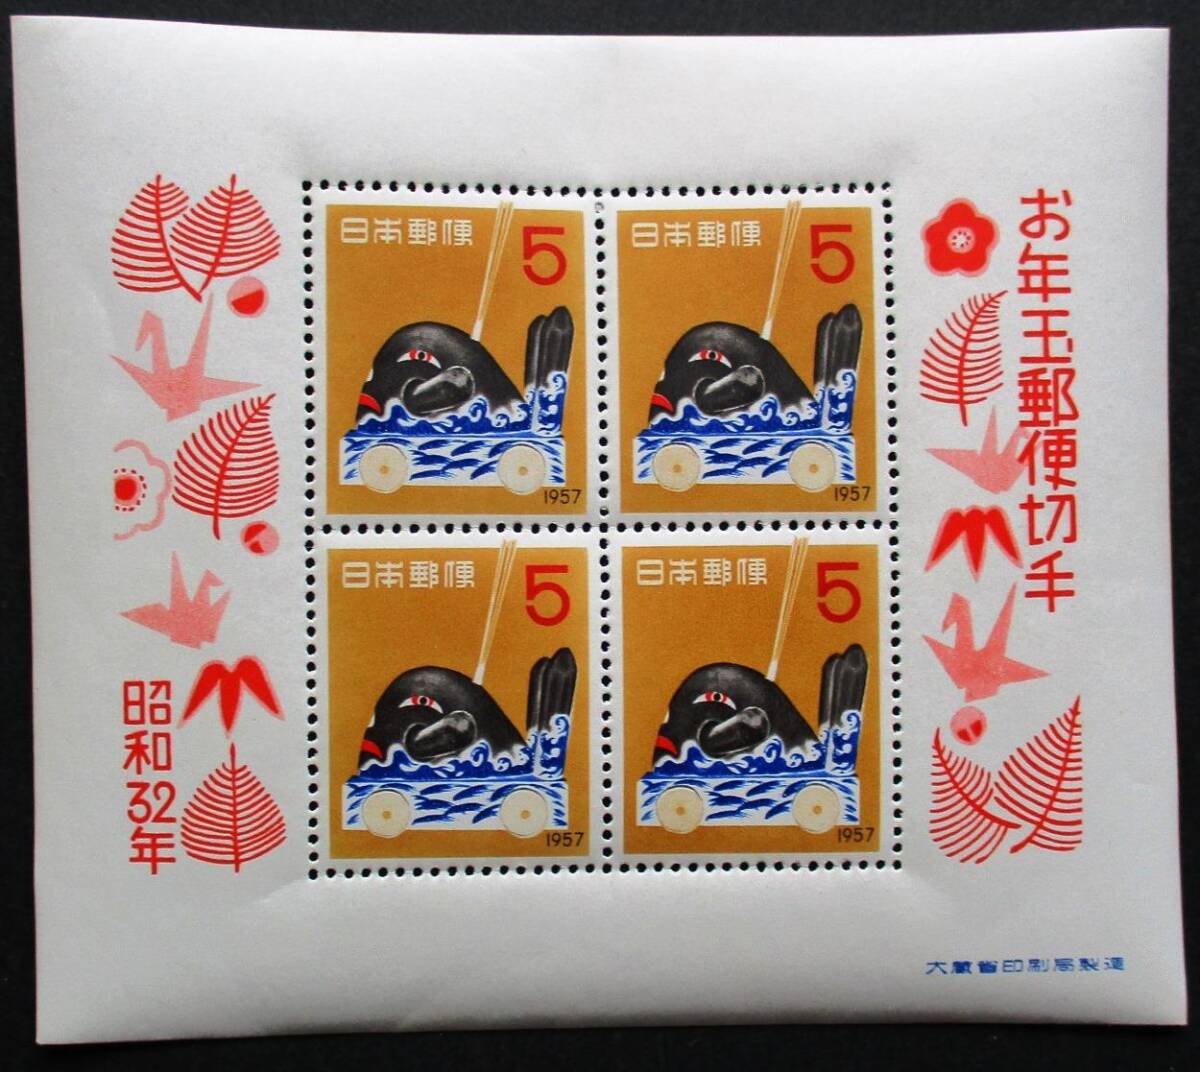 日本切手 　昭和32年年賀切手　だんじり　小型シート 　MM19　ほぼ美品です。　画像参照してください。_画像1